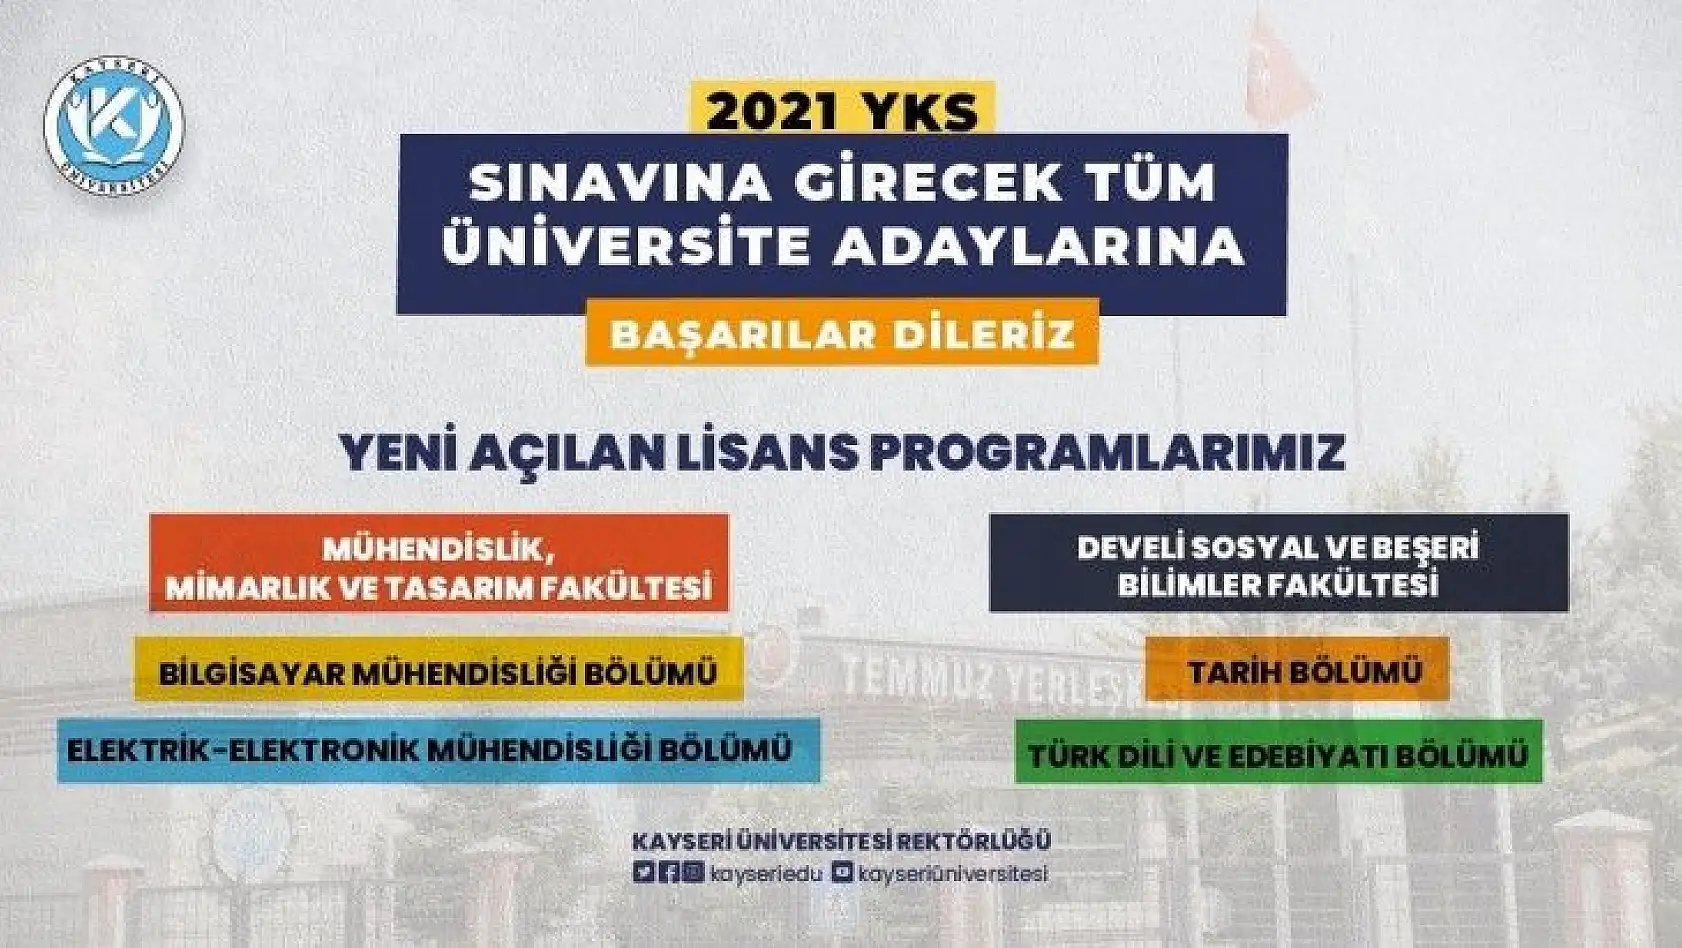 Kayseri Üniversitesi'nde yeni açılan lisans programları öğrenci alımına başlıyor